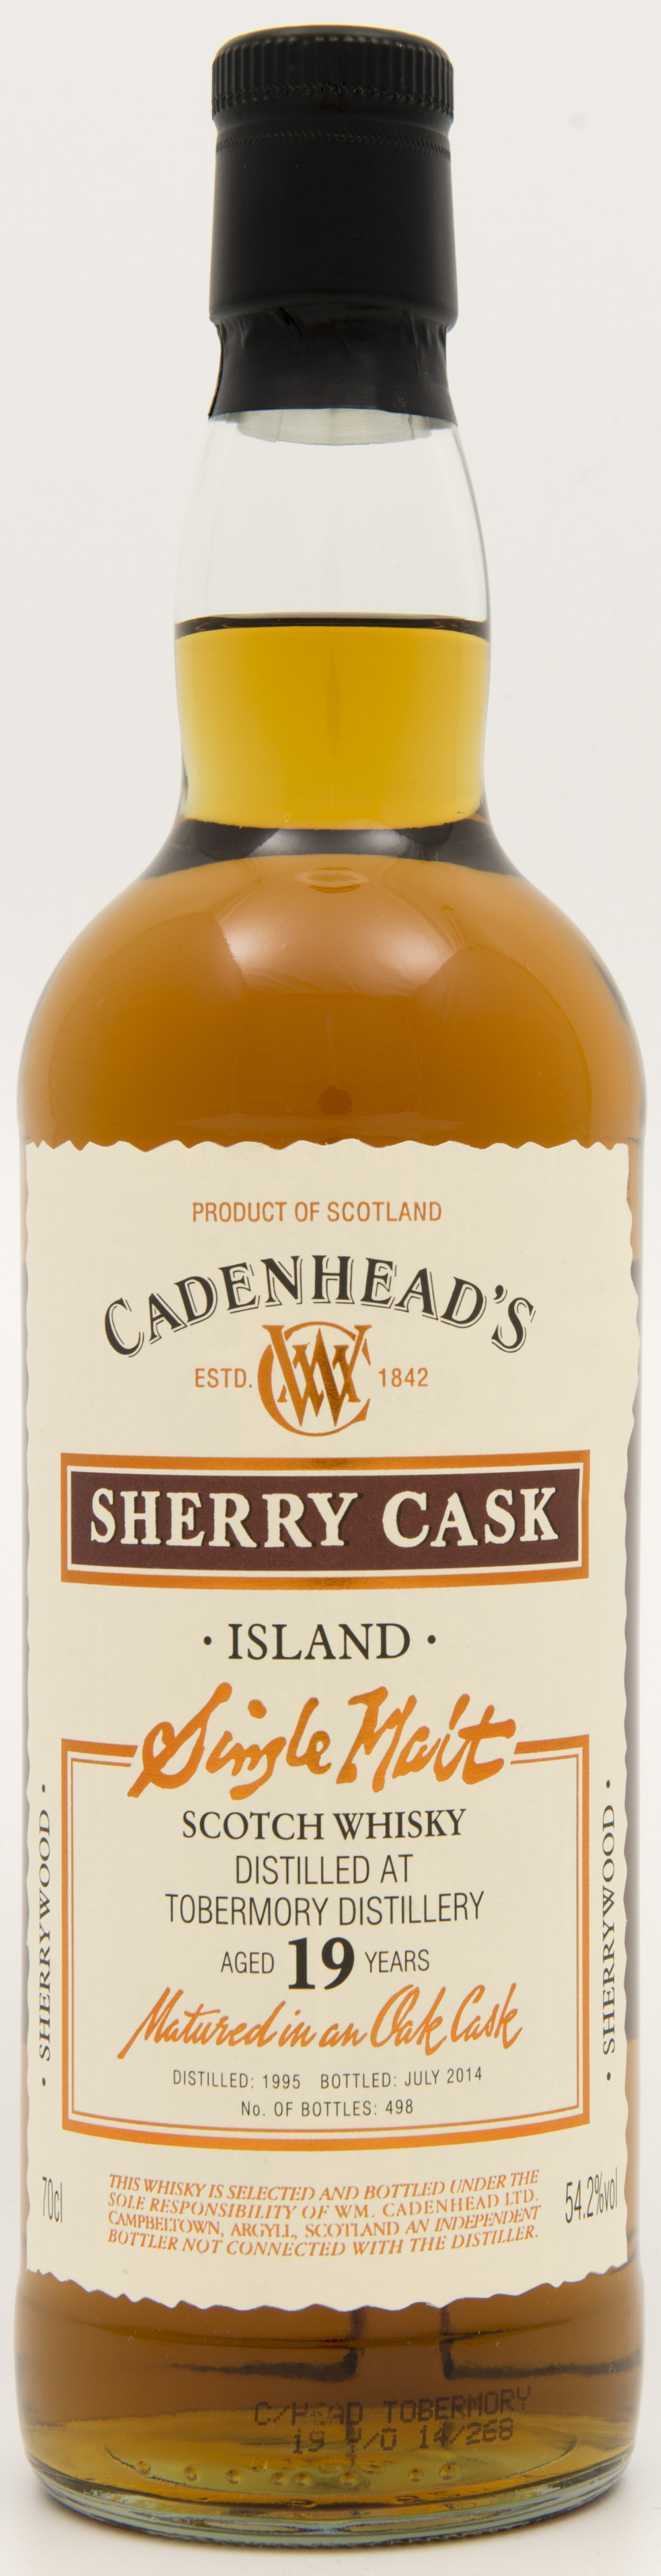 Billede: DSC_4828 - Cadenheads Sherry Cask - Tobermory 19 years - bottle front.jpg